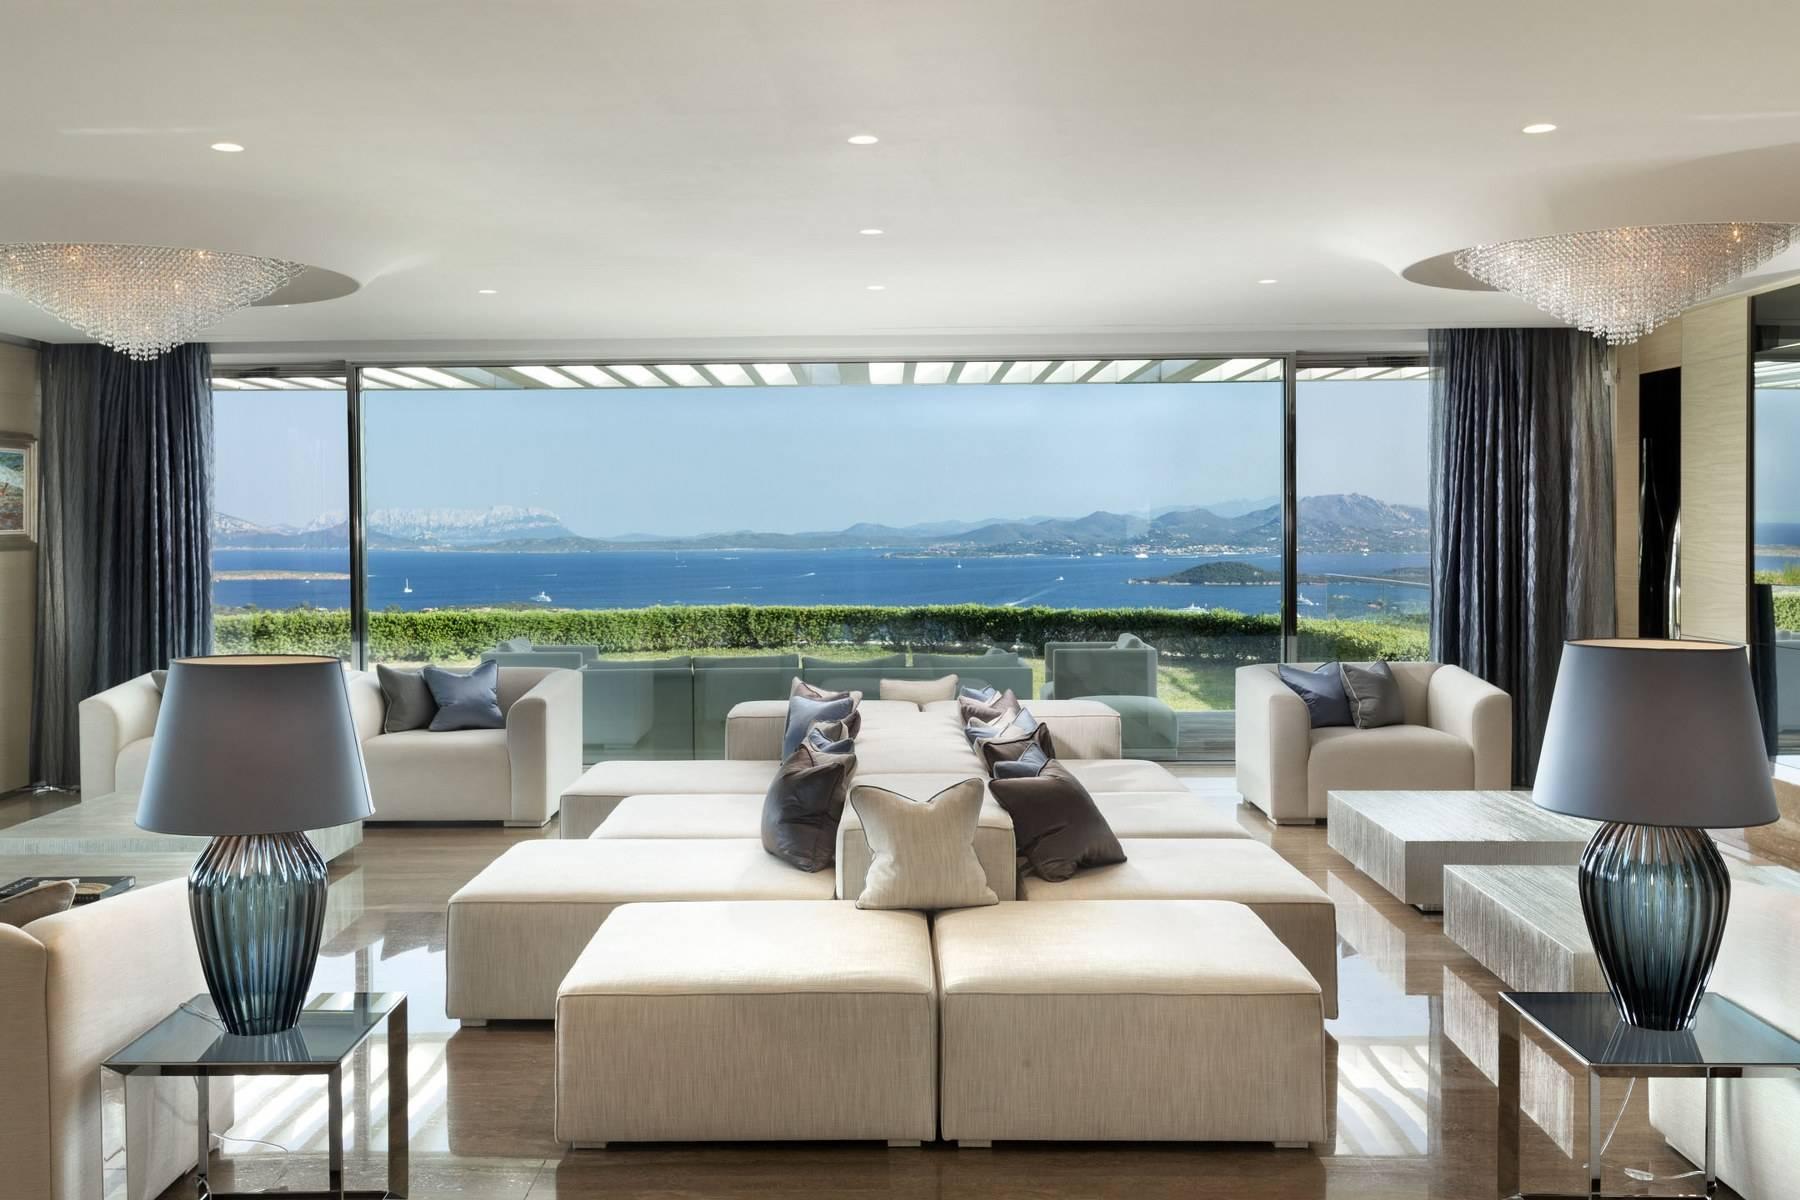 Prestigious and elegant villa located in the heart of the Costa Smeralda - 2